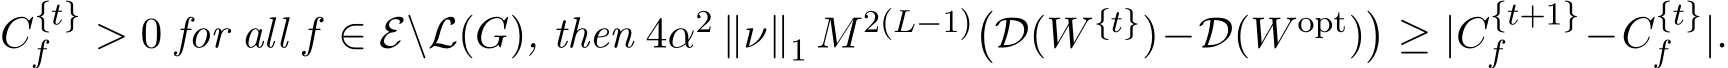 C{t}f > 0 for all f ∈ E\L(G), then 4α2 ∥ν∥1 M2(L−1)�D(W {t})−D(W opt)�≥ |C{t+1}f −C{t}f |.